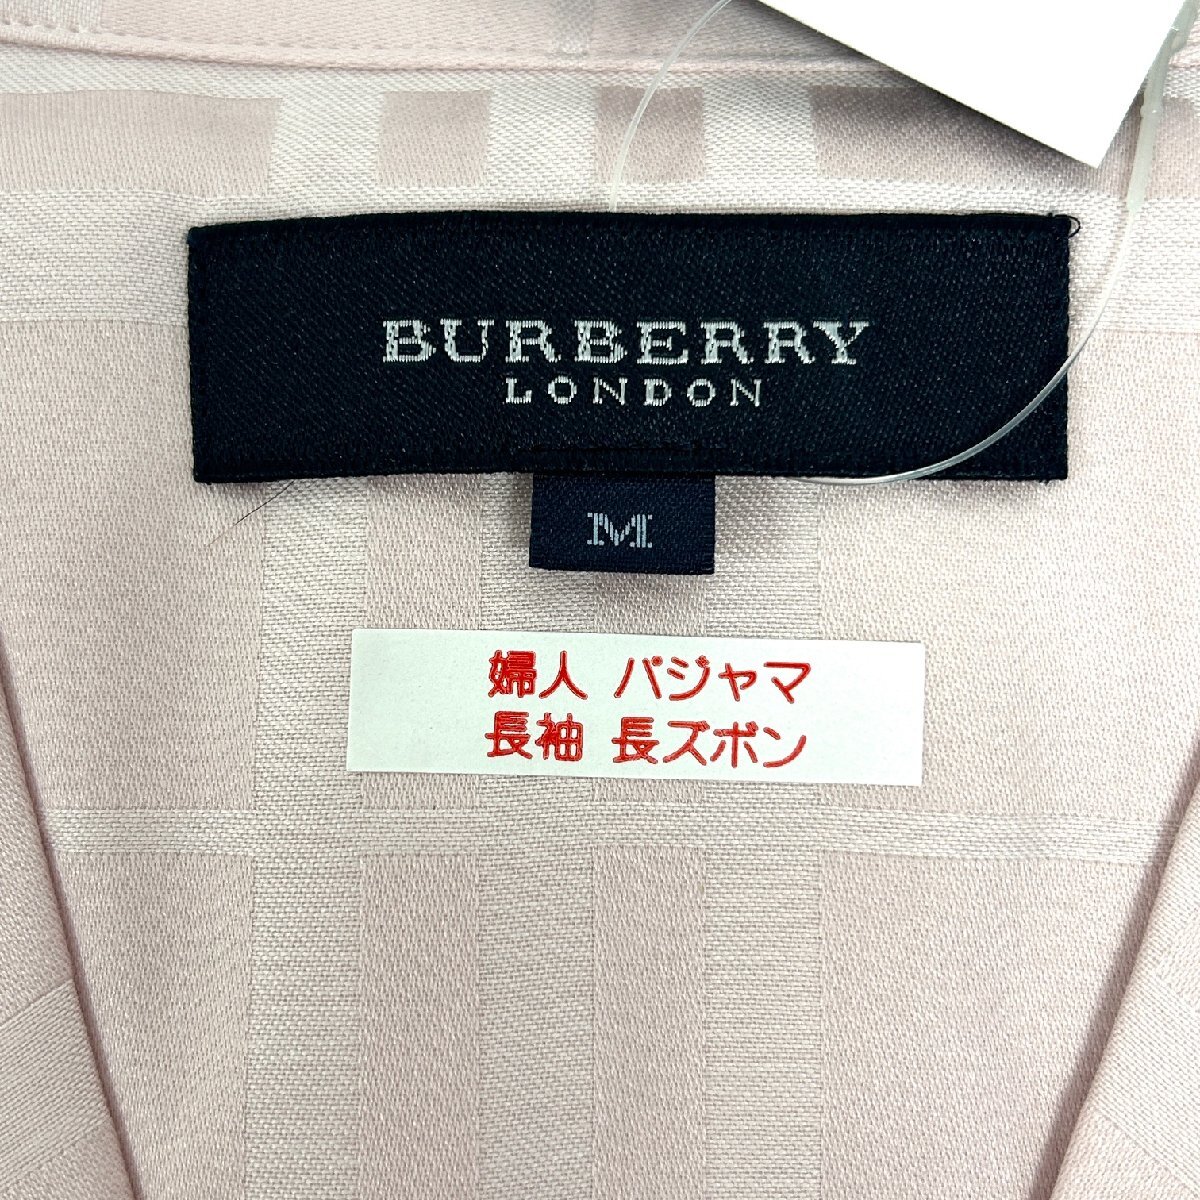 [77]BURBERRY Burberry пижама длинный рукав длинные брюки M размер розовый хлопок запад река промышленность не использовался товар с биркой 